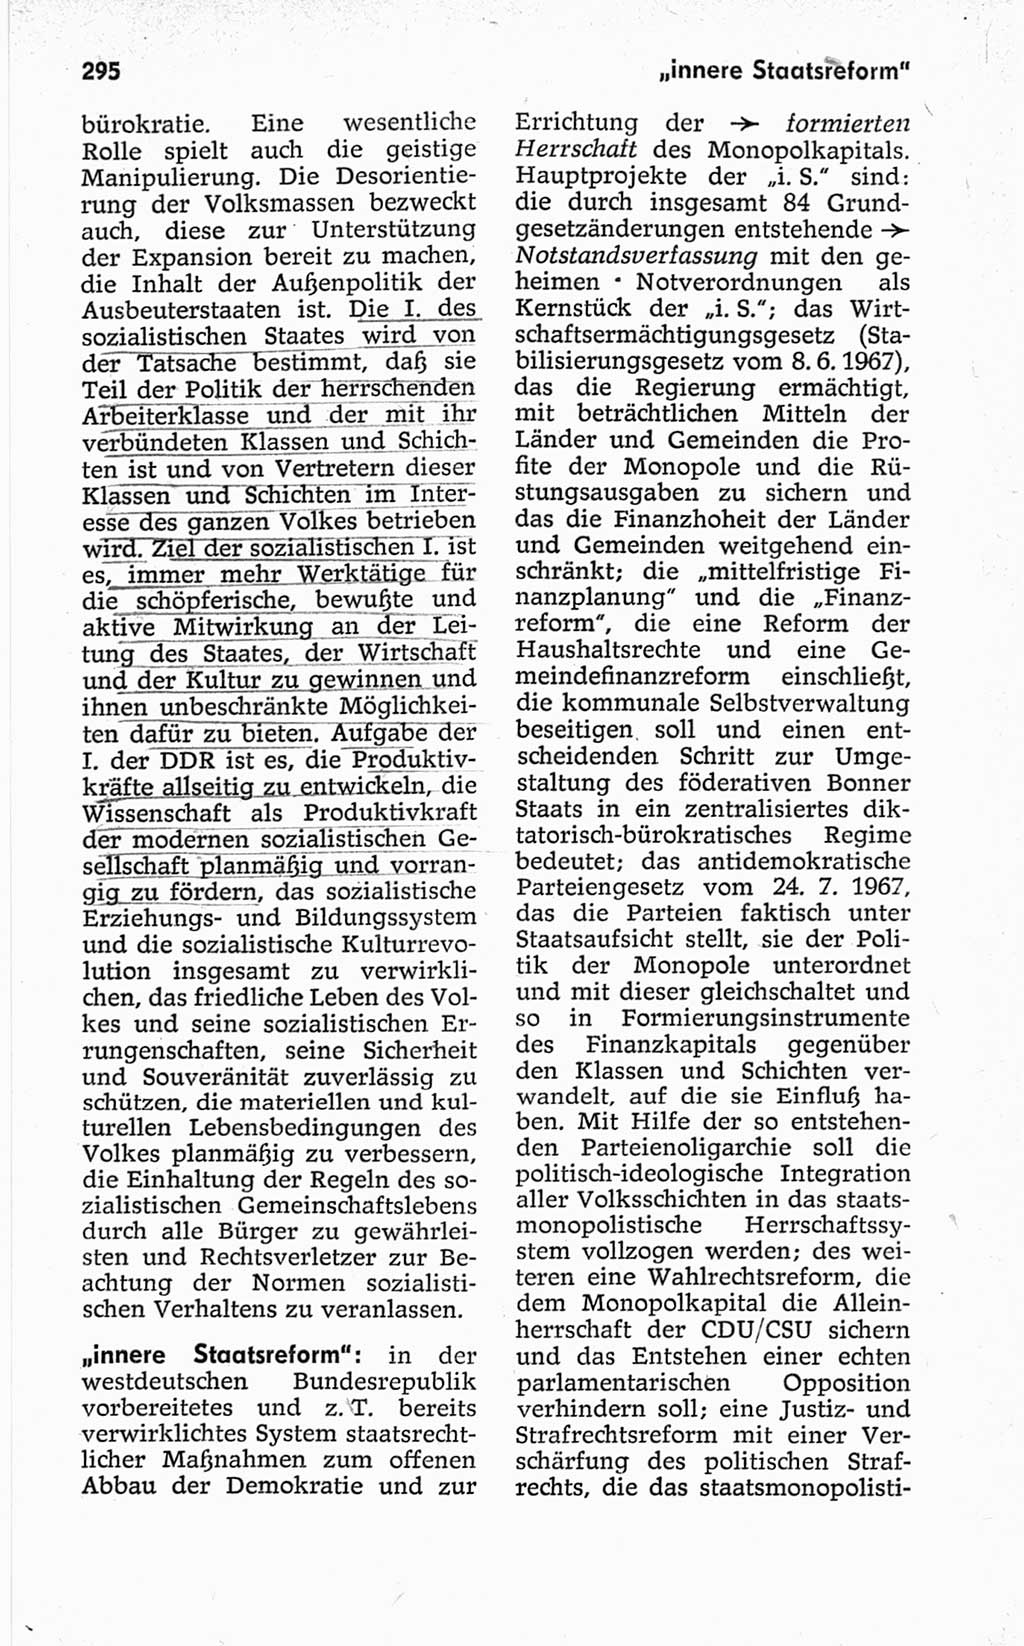 Kleines politisches Wörterbuch [Deutsche Demokratische Republik (DDR)] 1967, Seite 295 (Kl. pol. Wb. DDR 1967, S. 295)